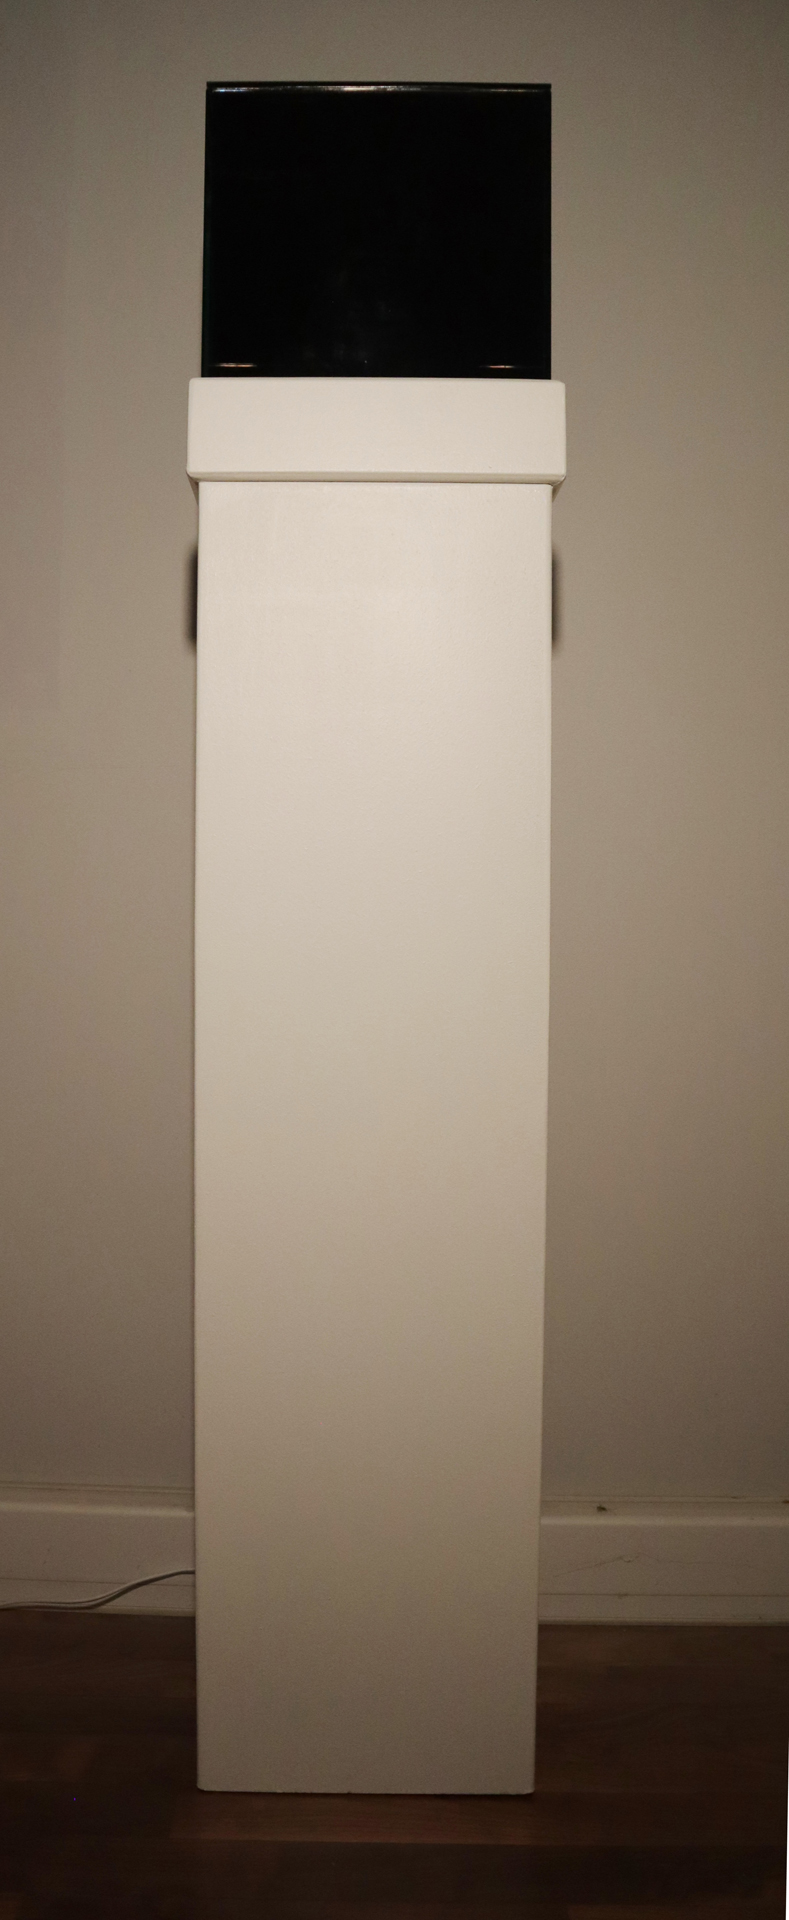 01 Lichtbox mit Wabenobjekt unbeleuchtet, 2021, Spiegelglas verklebt, Ofenglas, 151 x 32 x 32